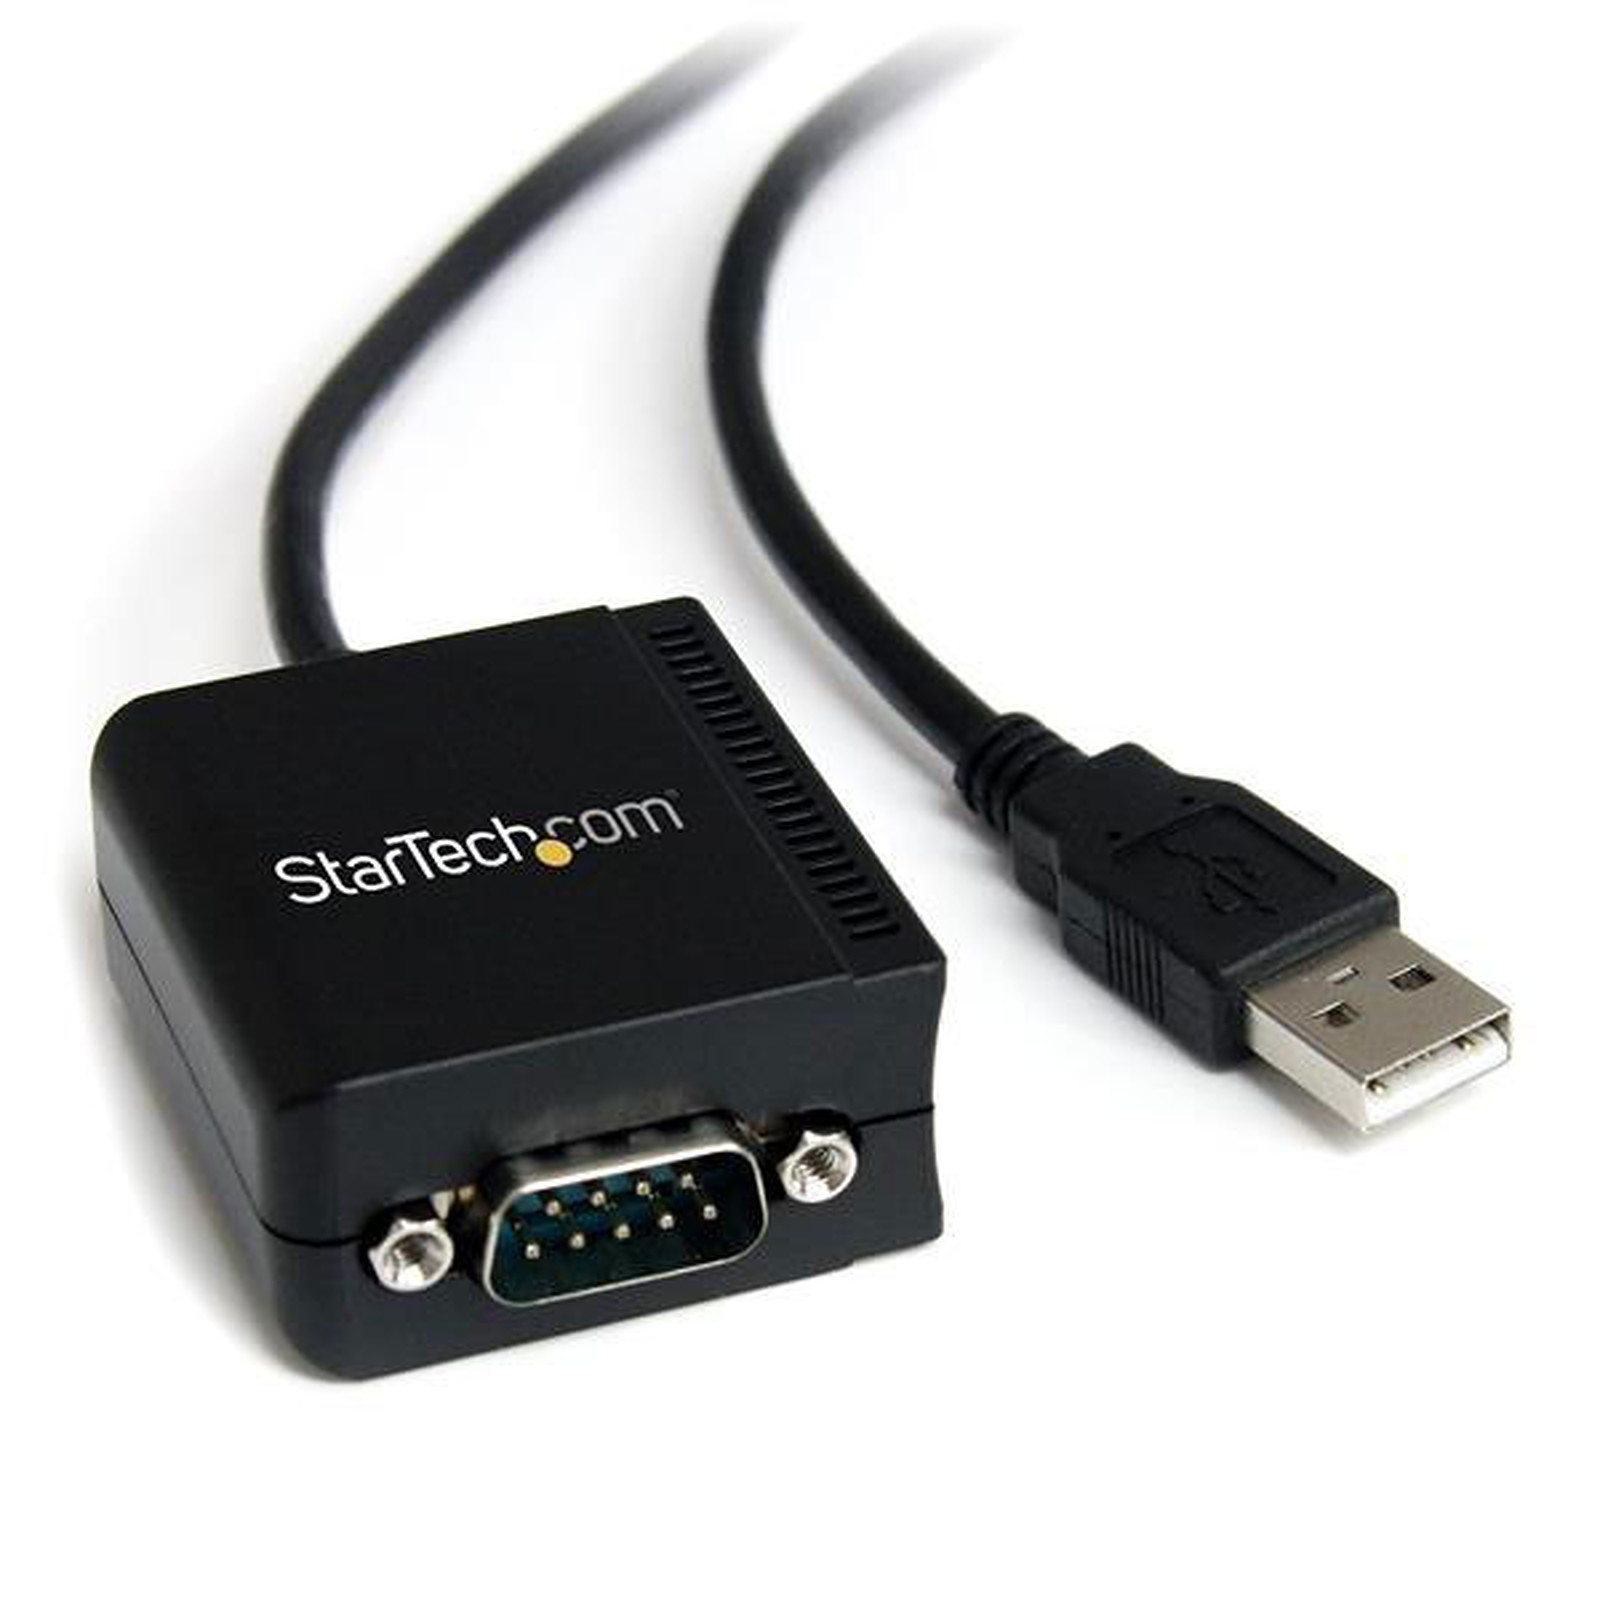 StarTech.com ICUSB2321F - USB StarTech.com